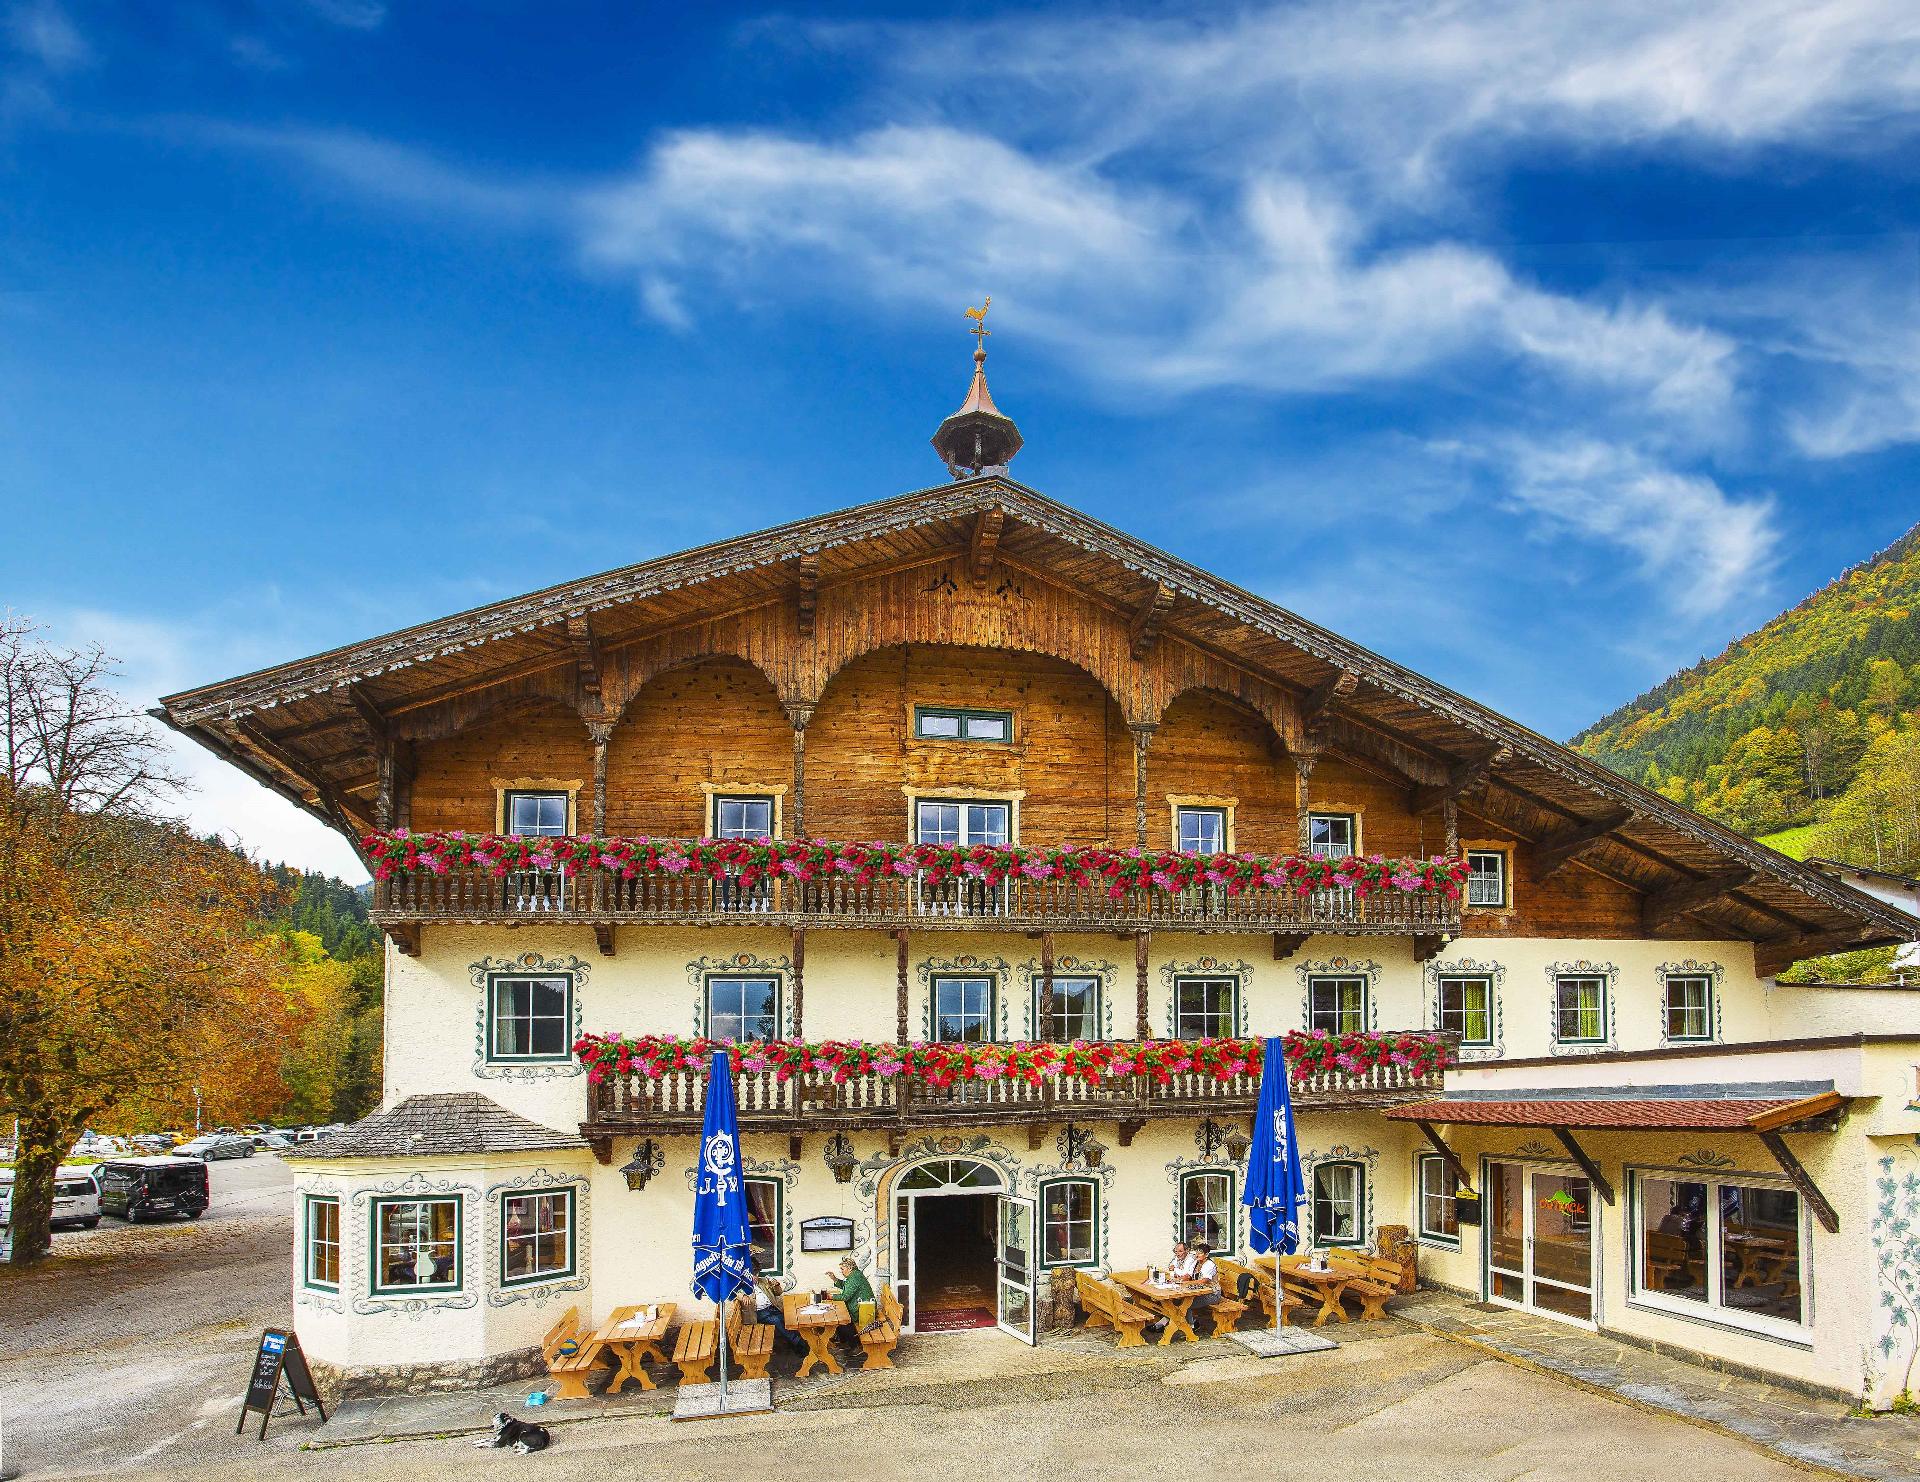 Ferienwohnung für 4 Personen ca. 60 m² i Ferienwohnung in der Urlaubsregion Kufstein